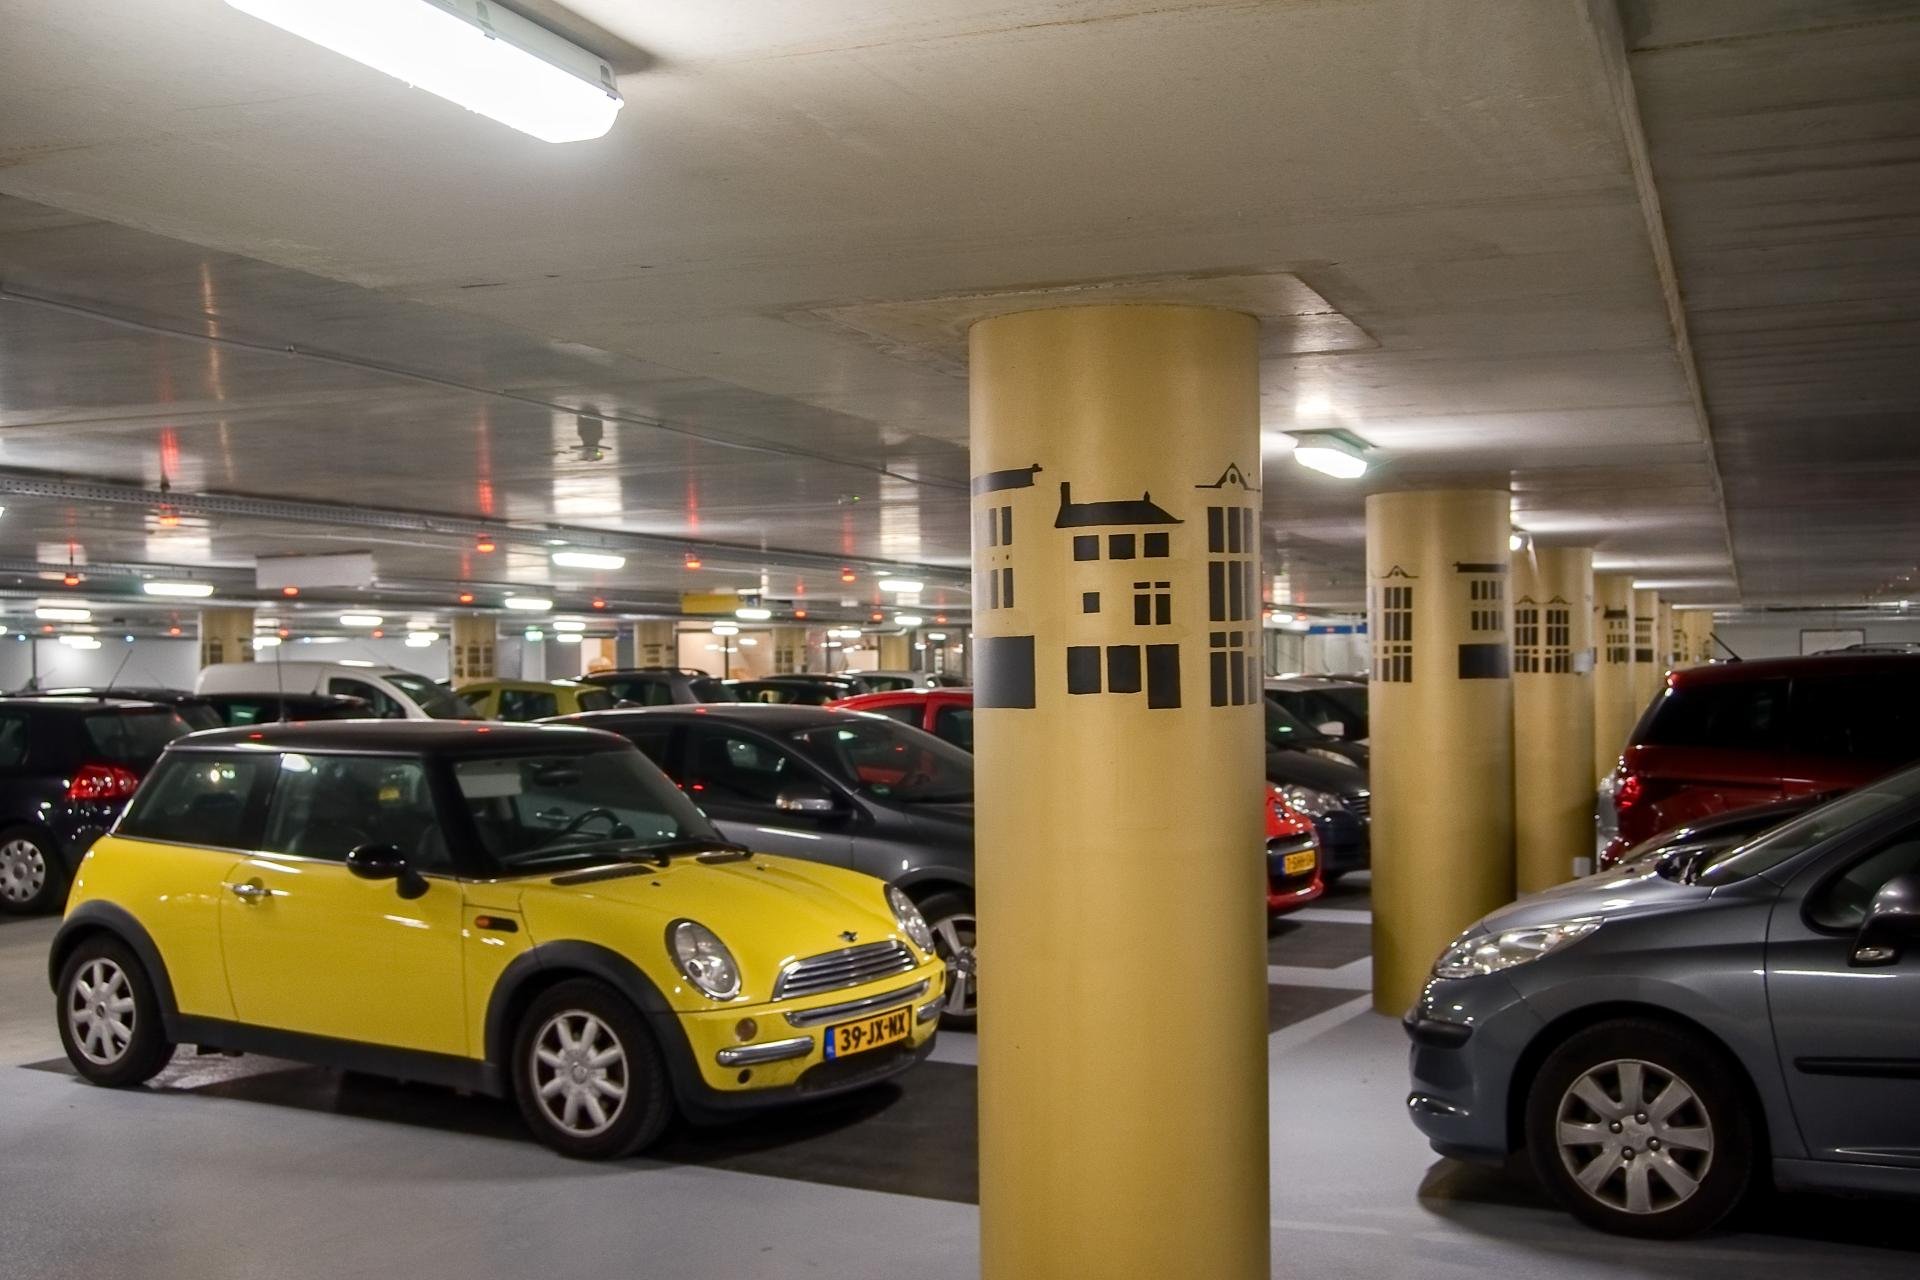 parkeergarage met allemaal geparkeerde auto's. De pilaren zijn goudkleurig met allemaal huizen erop.